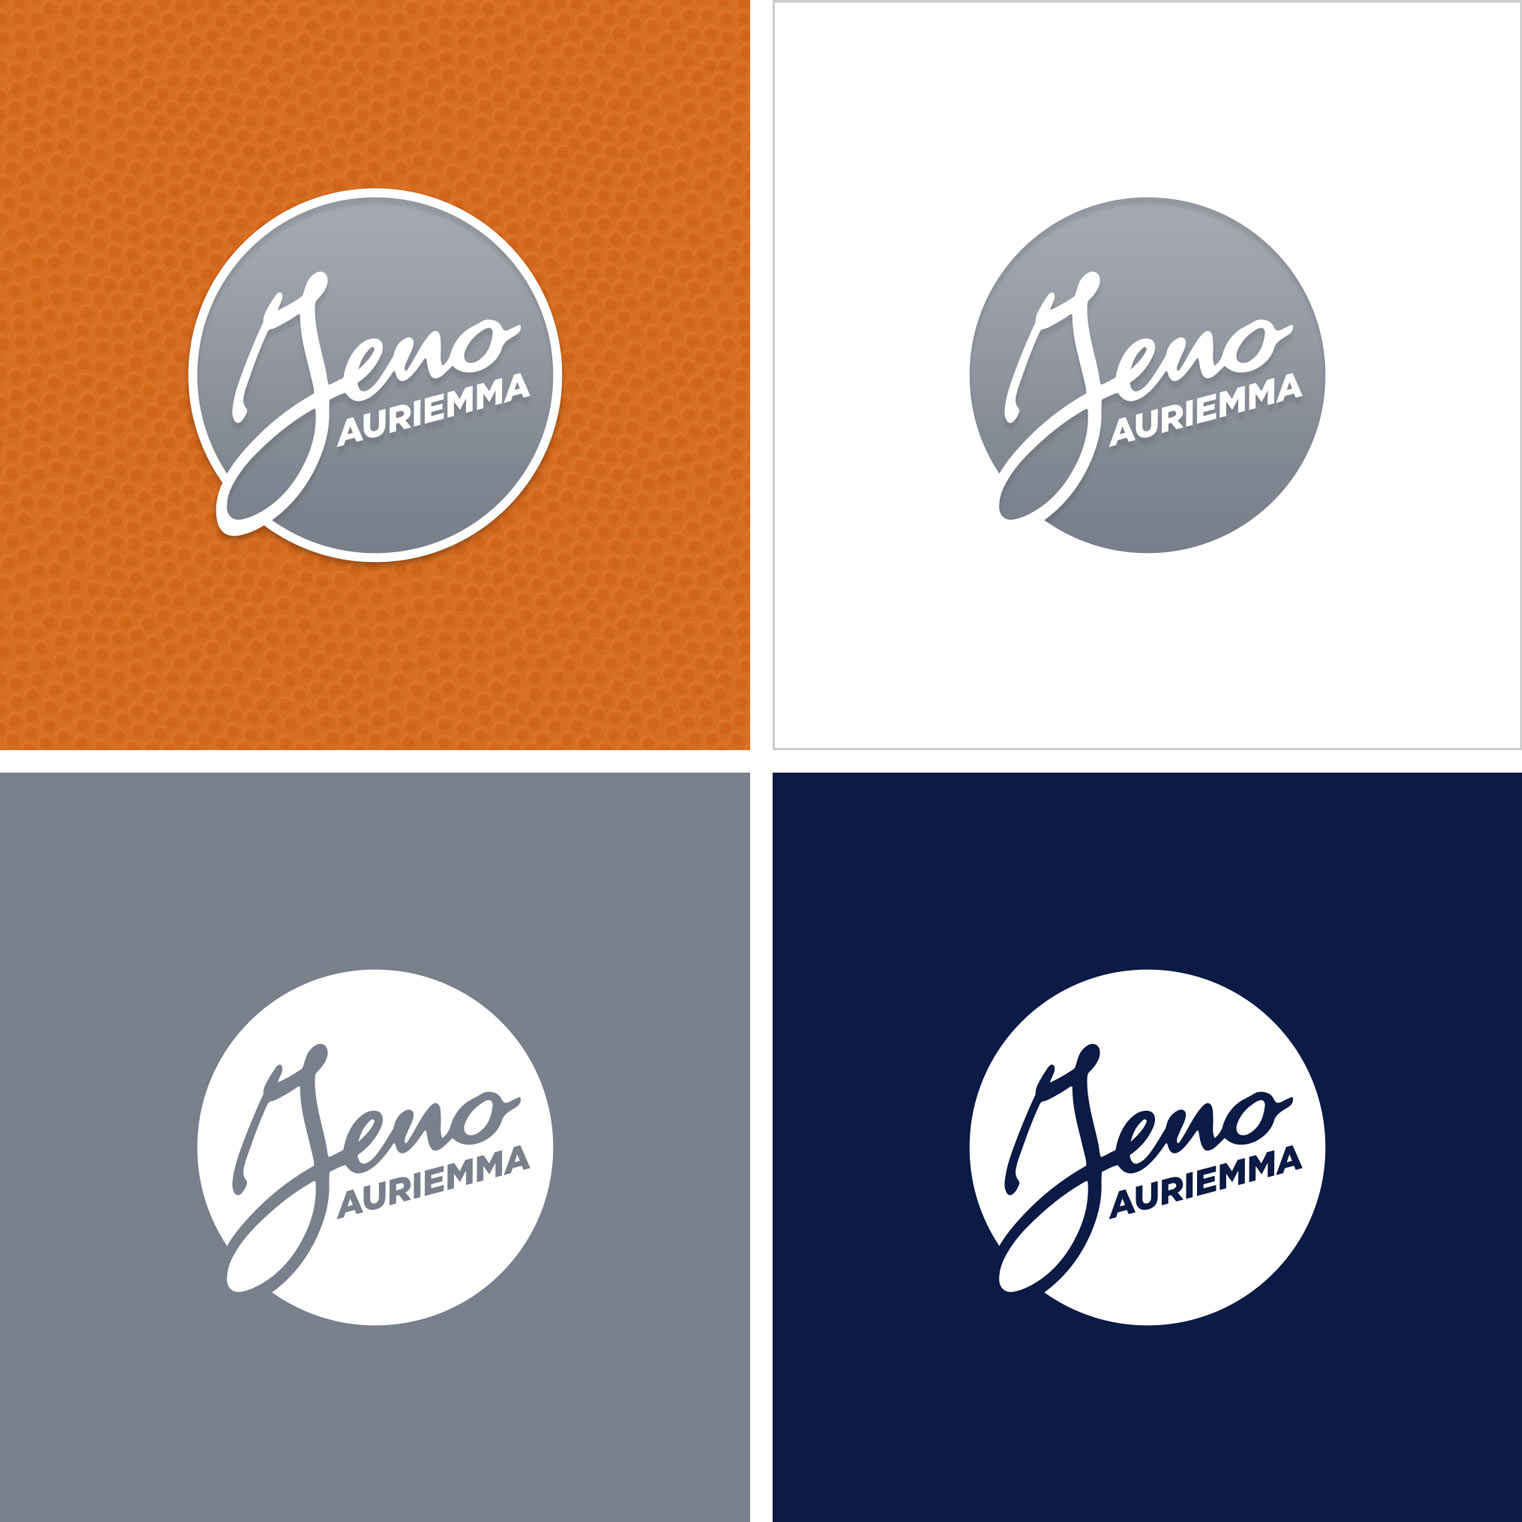 Geno Auriemma logos